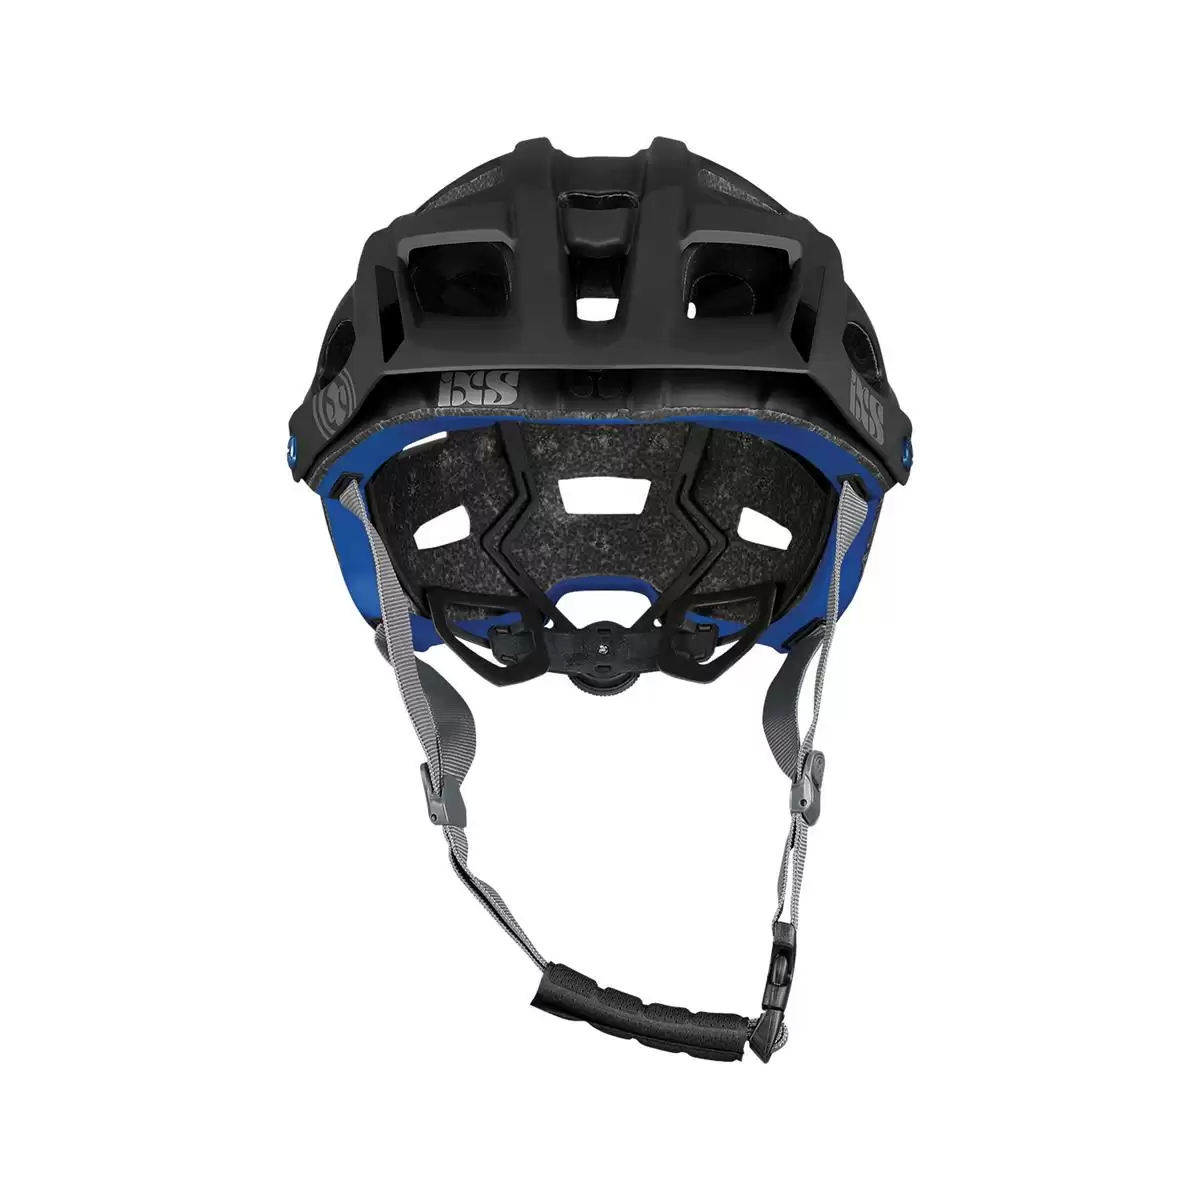 Henduro Helmet Trail Evo E-Bike Edition Black Size XS/S (49-54cm) #1